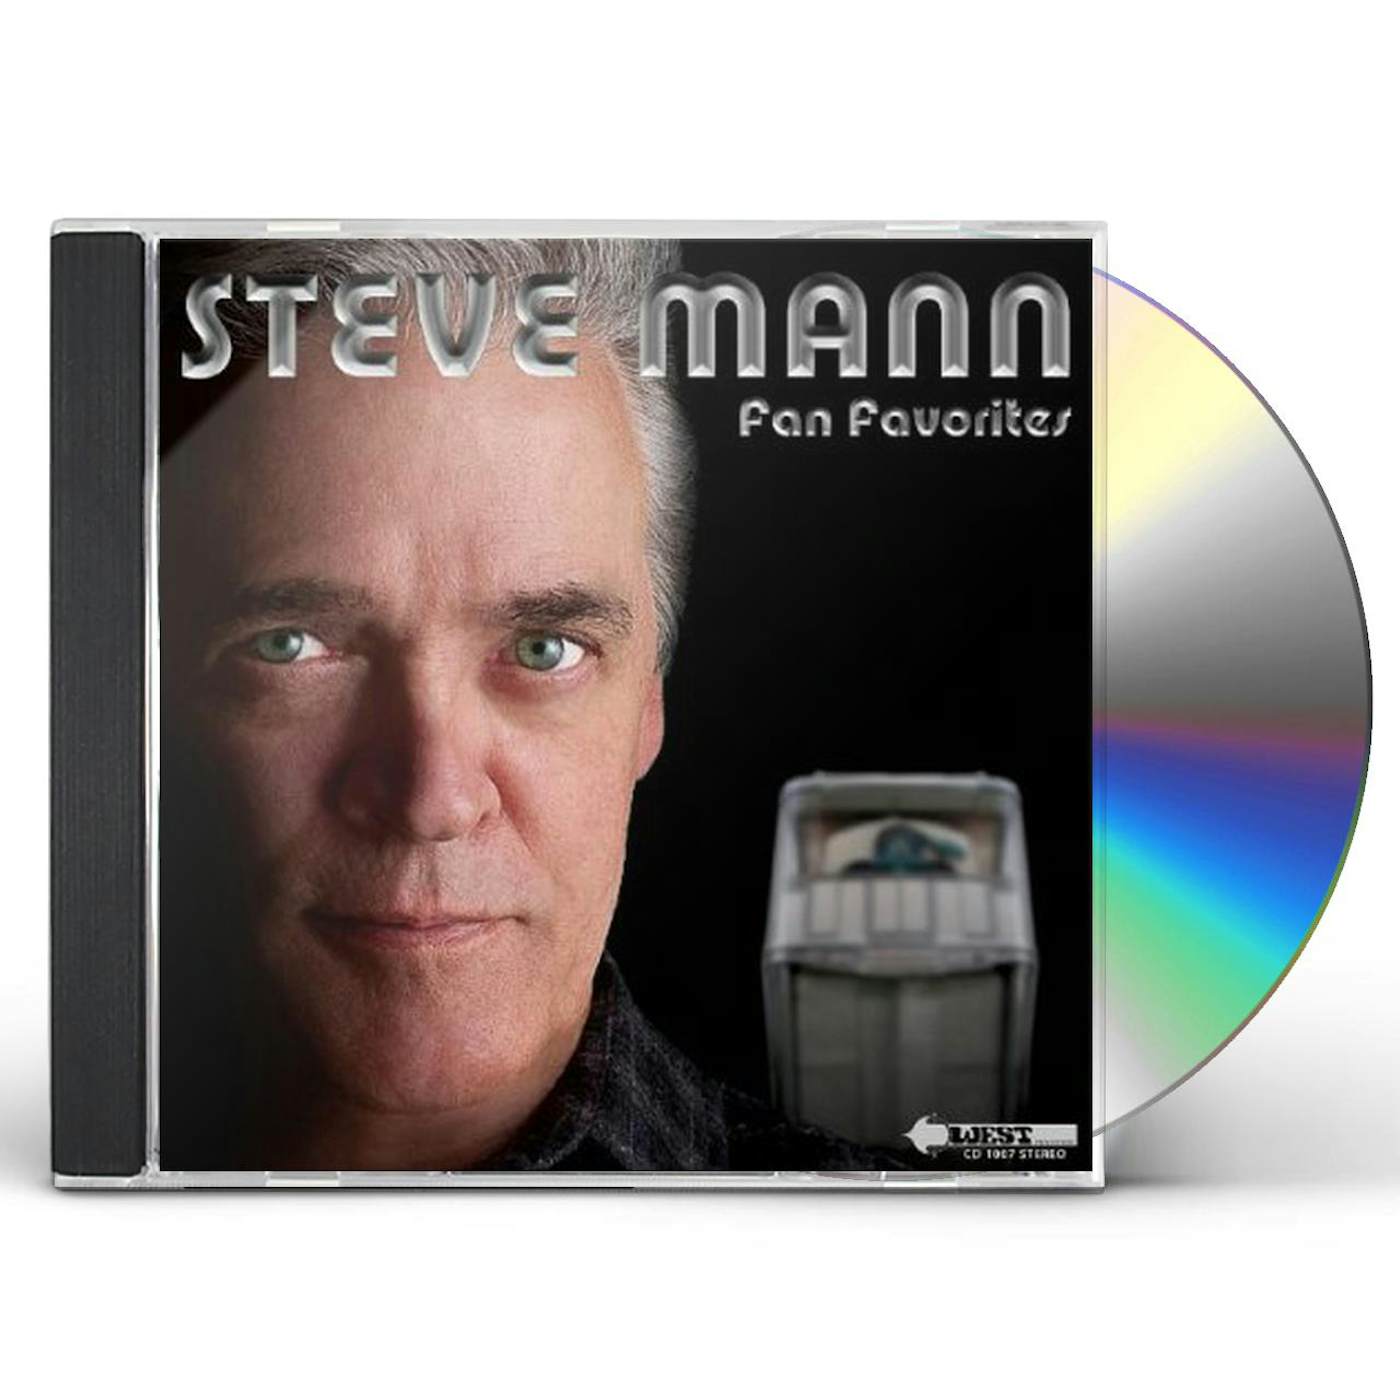 Steve Mann FAN FAVORITES CD